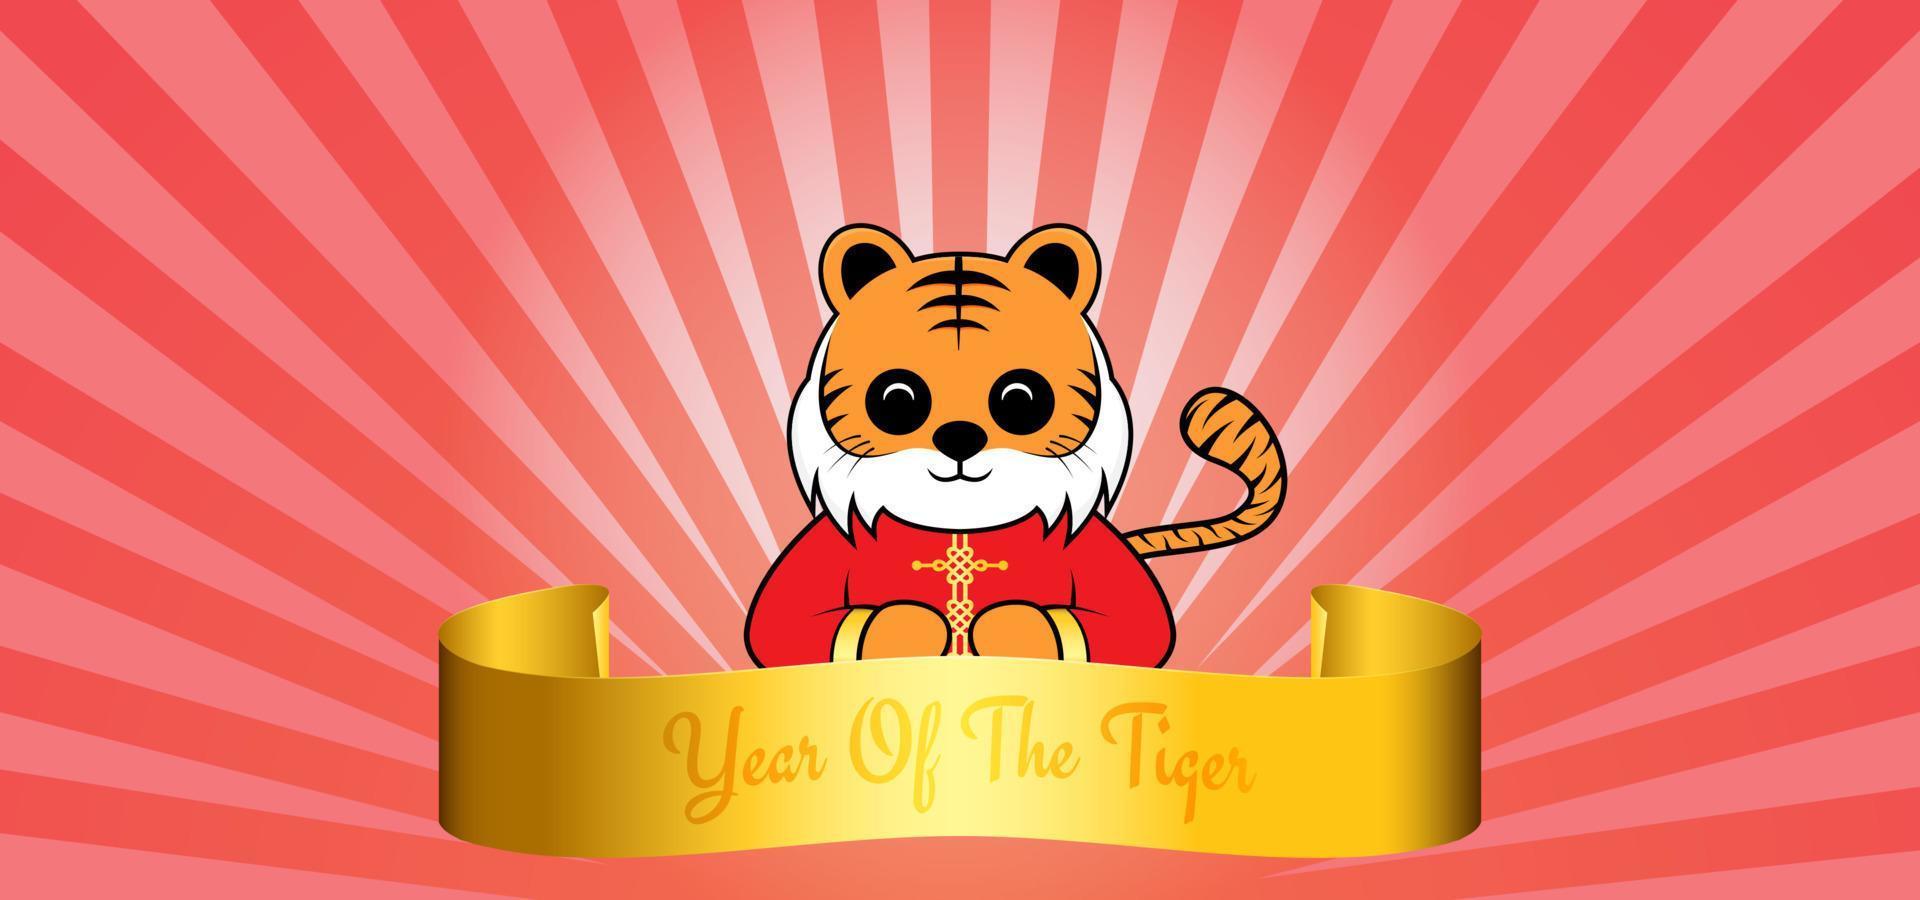 2022 année du tigre. joyeux nouvel an chinois avec caractère tigre et ruban doré vecteur